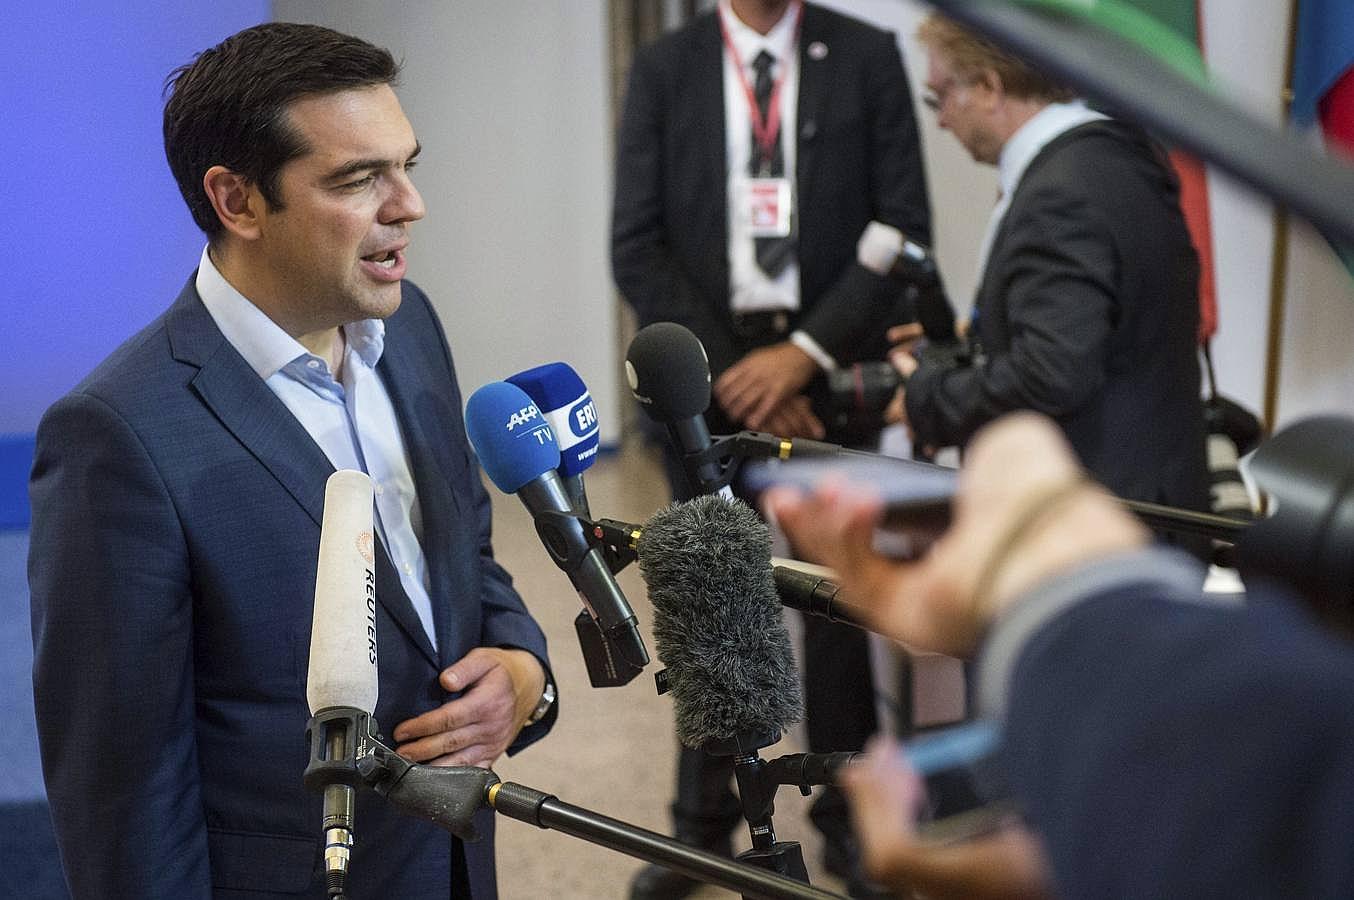 El presidente griego, Alexis Tsipras, comparece ante los medios tras alcanzarse un acuerdo en Bruselas sobre las condiciones al tercer rescate del país heleno